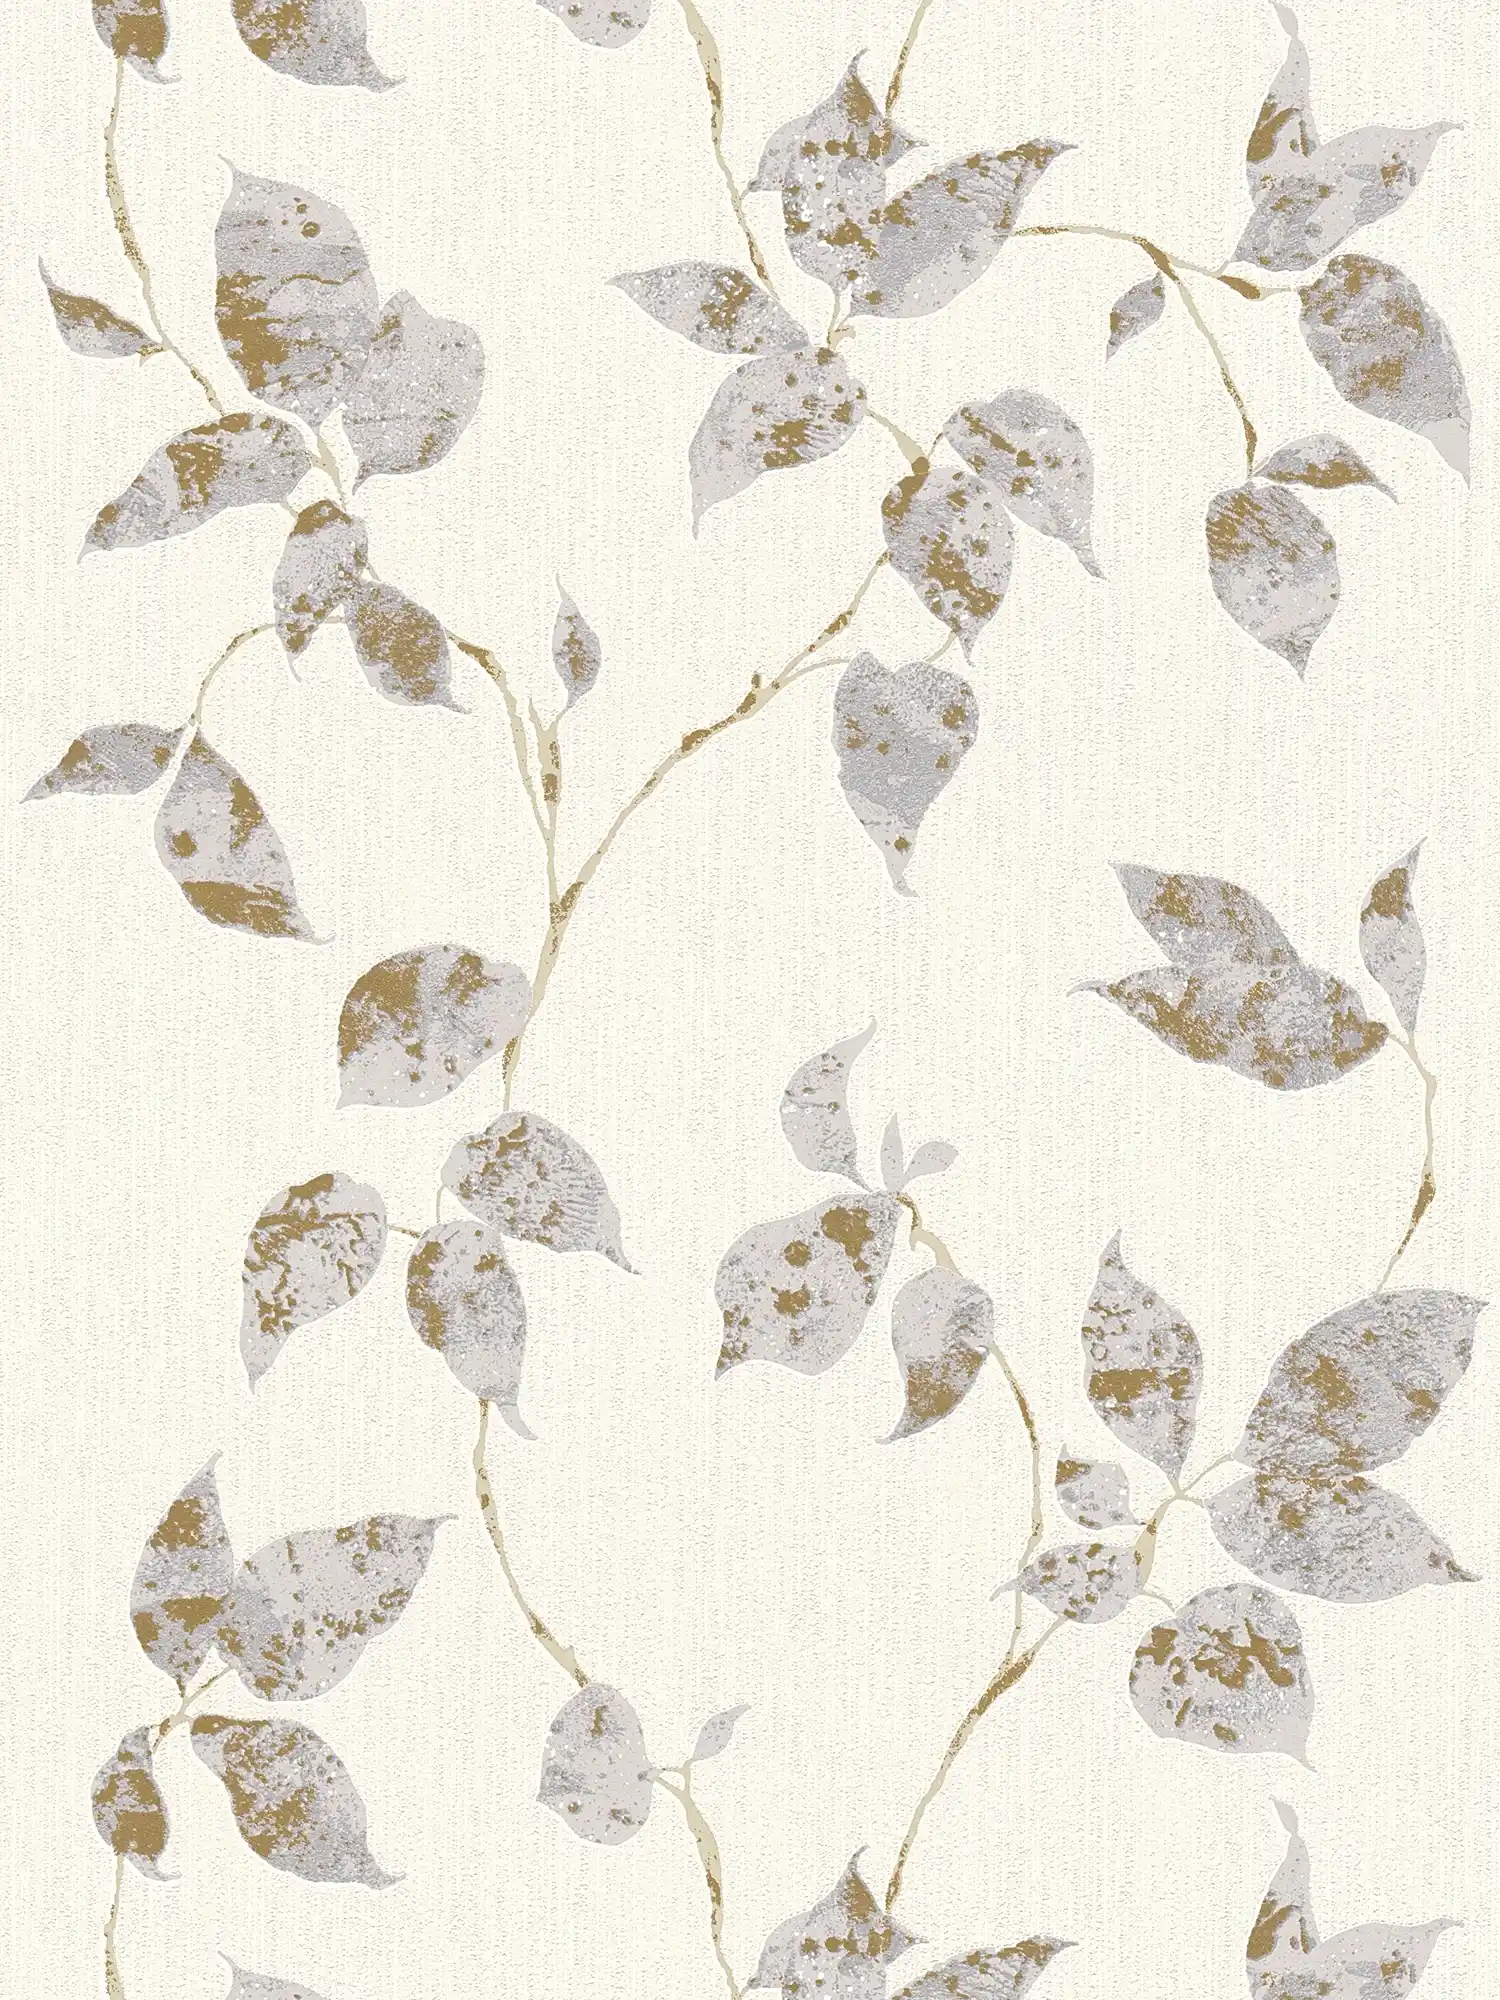 Papel pintado texturizado con zarcillos de hojas y acento metálico - Gris, Blanco
